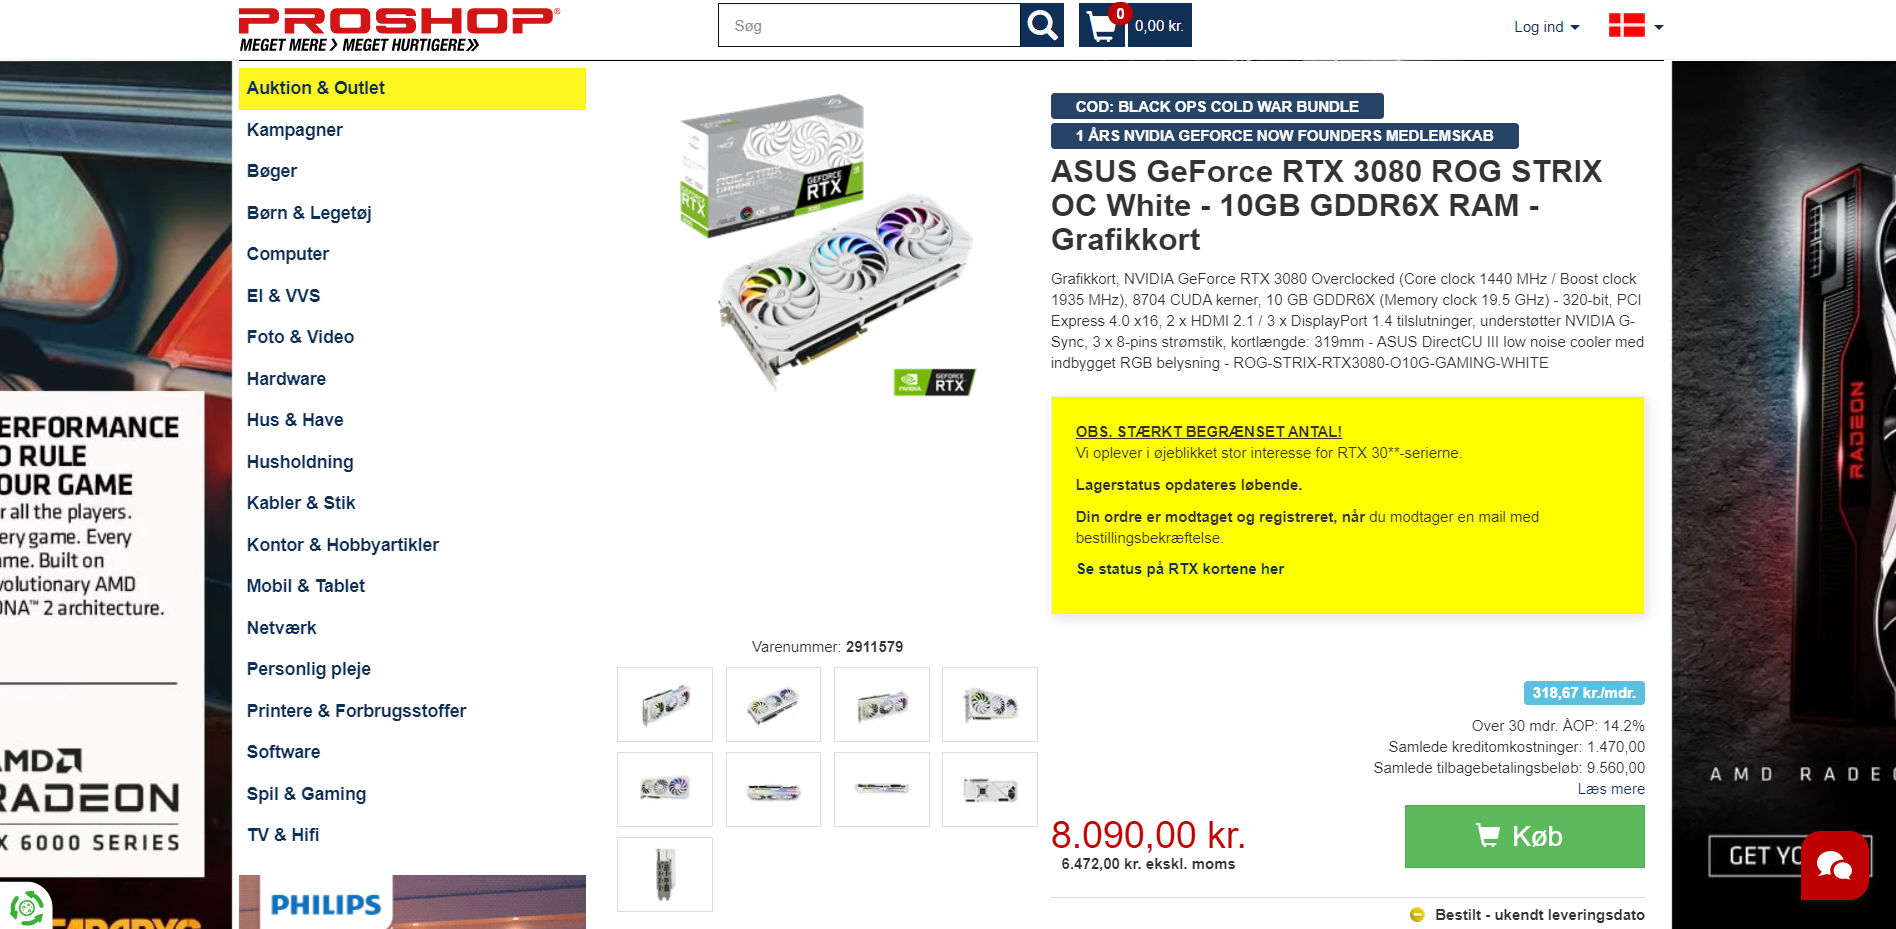 GeForce RTX 30 ROG STRIX White